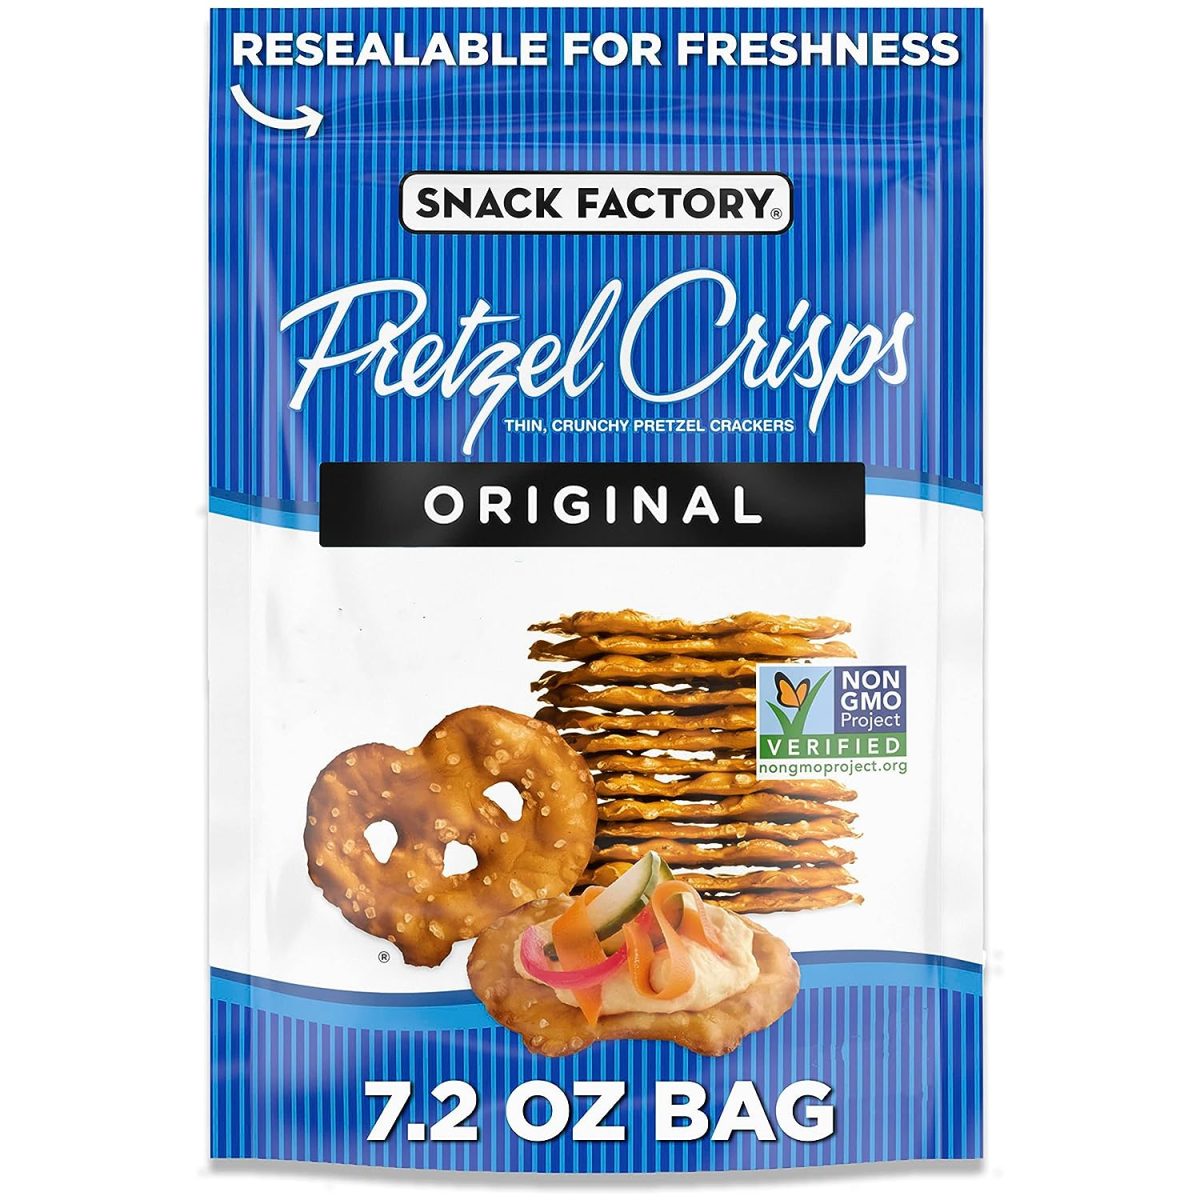 Snack Factory Original Pretzel Crisps